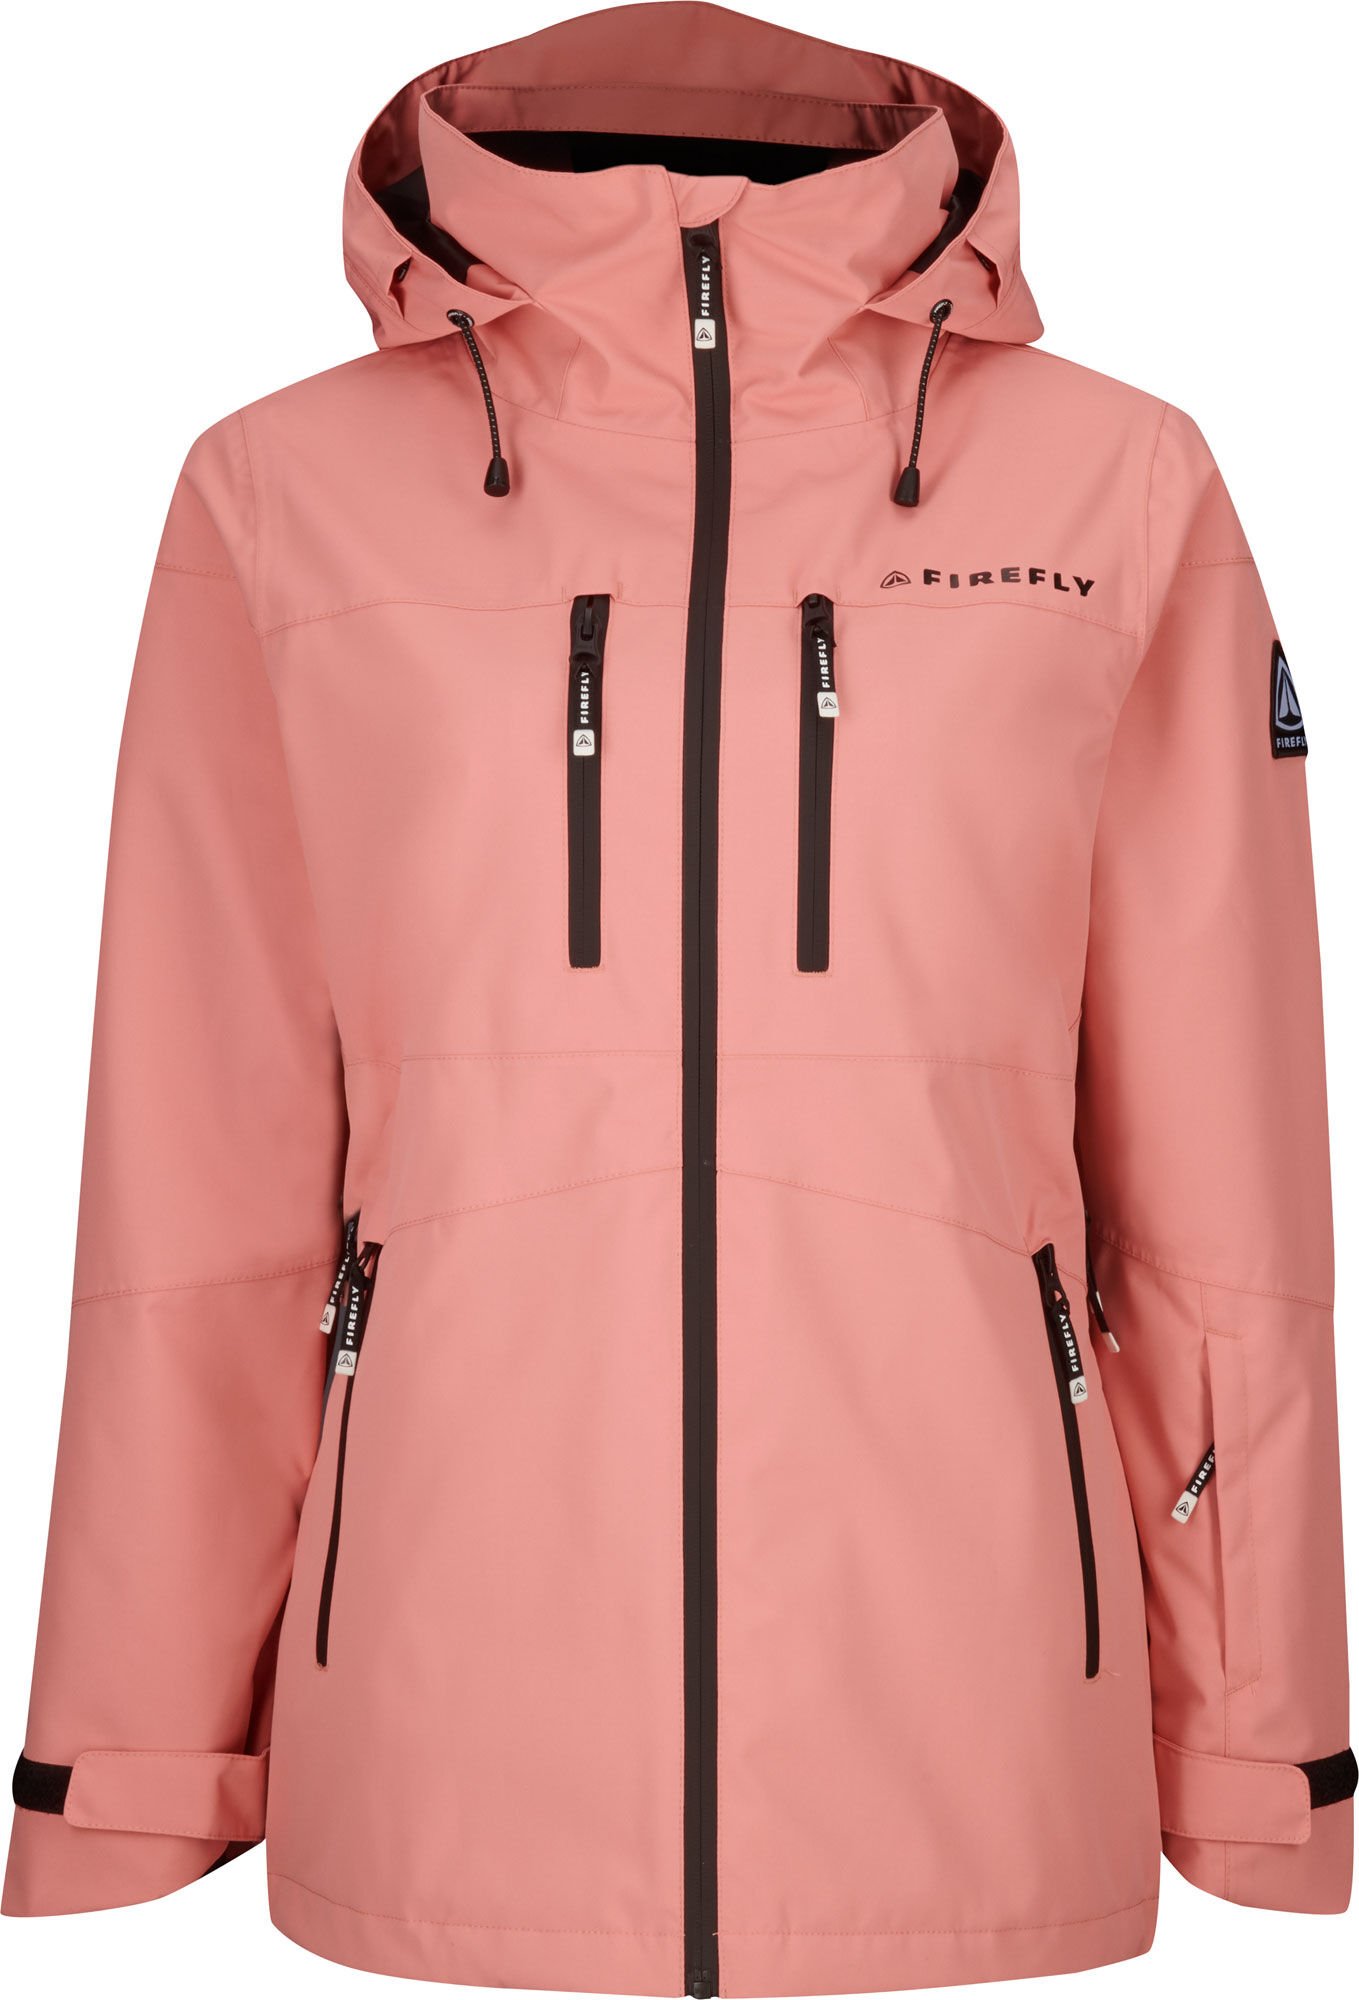 Firefly Waterloo Snowboard Jacket W